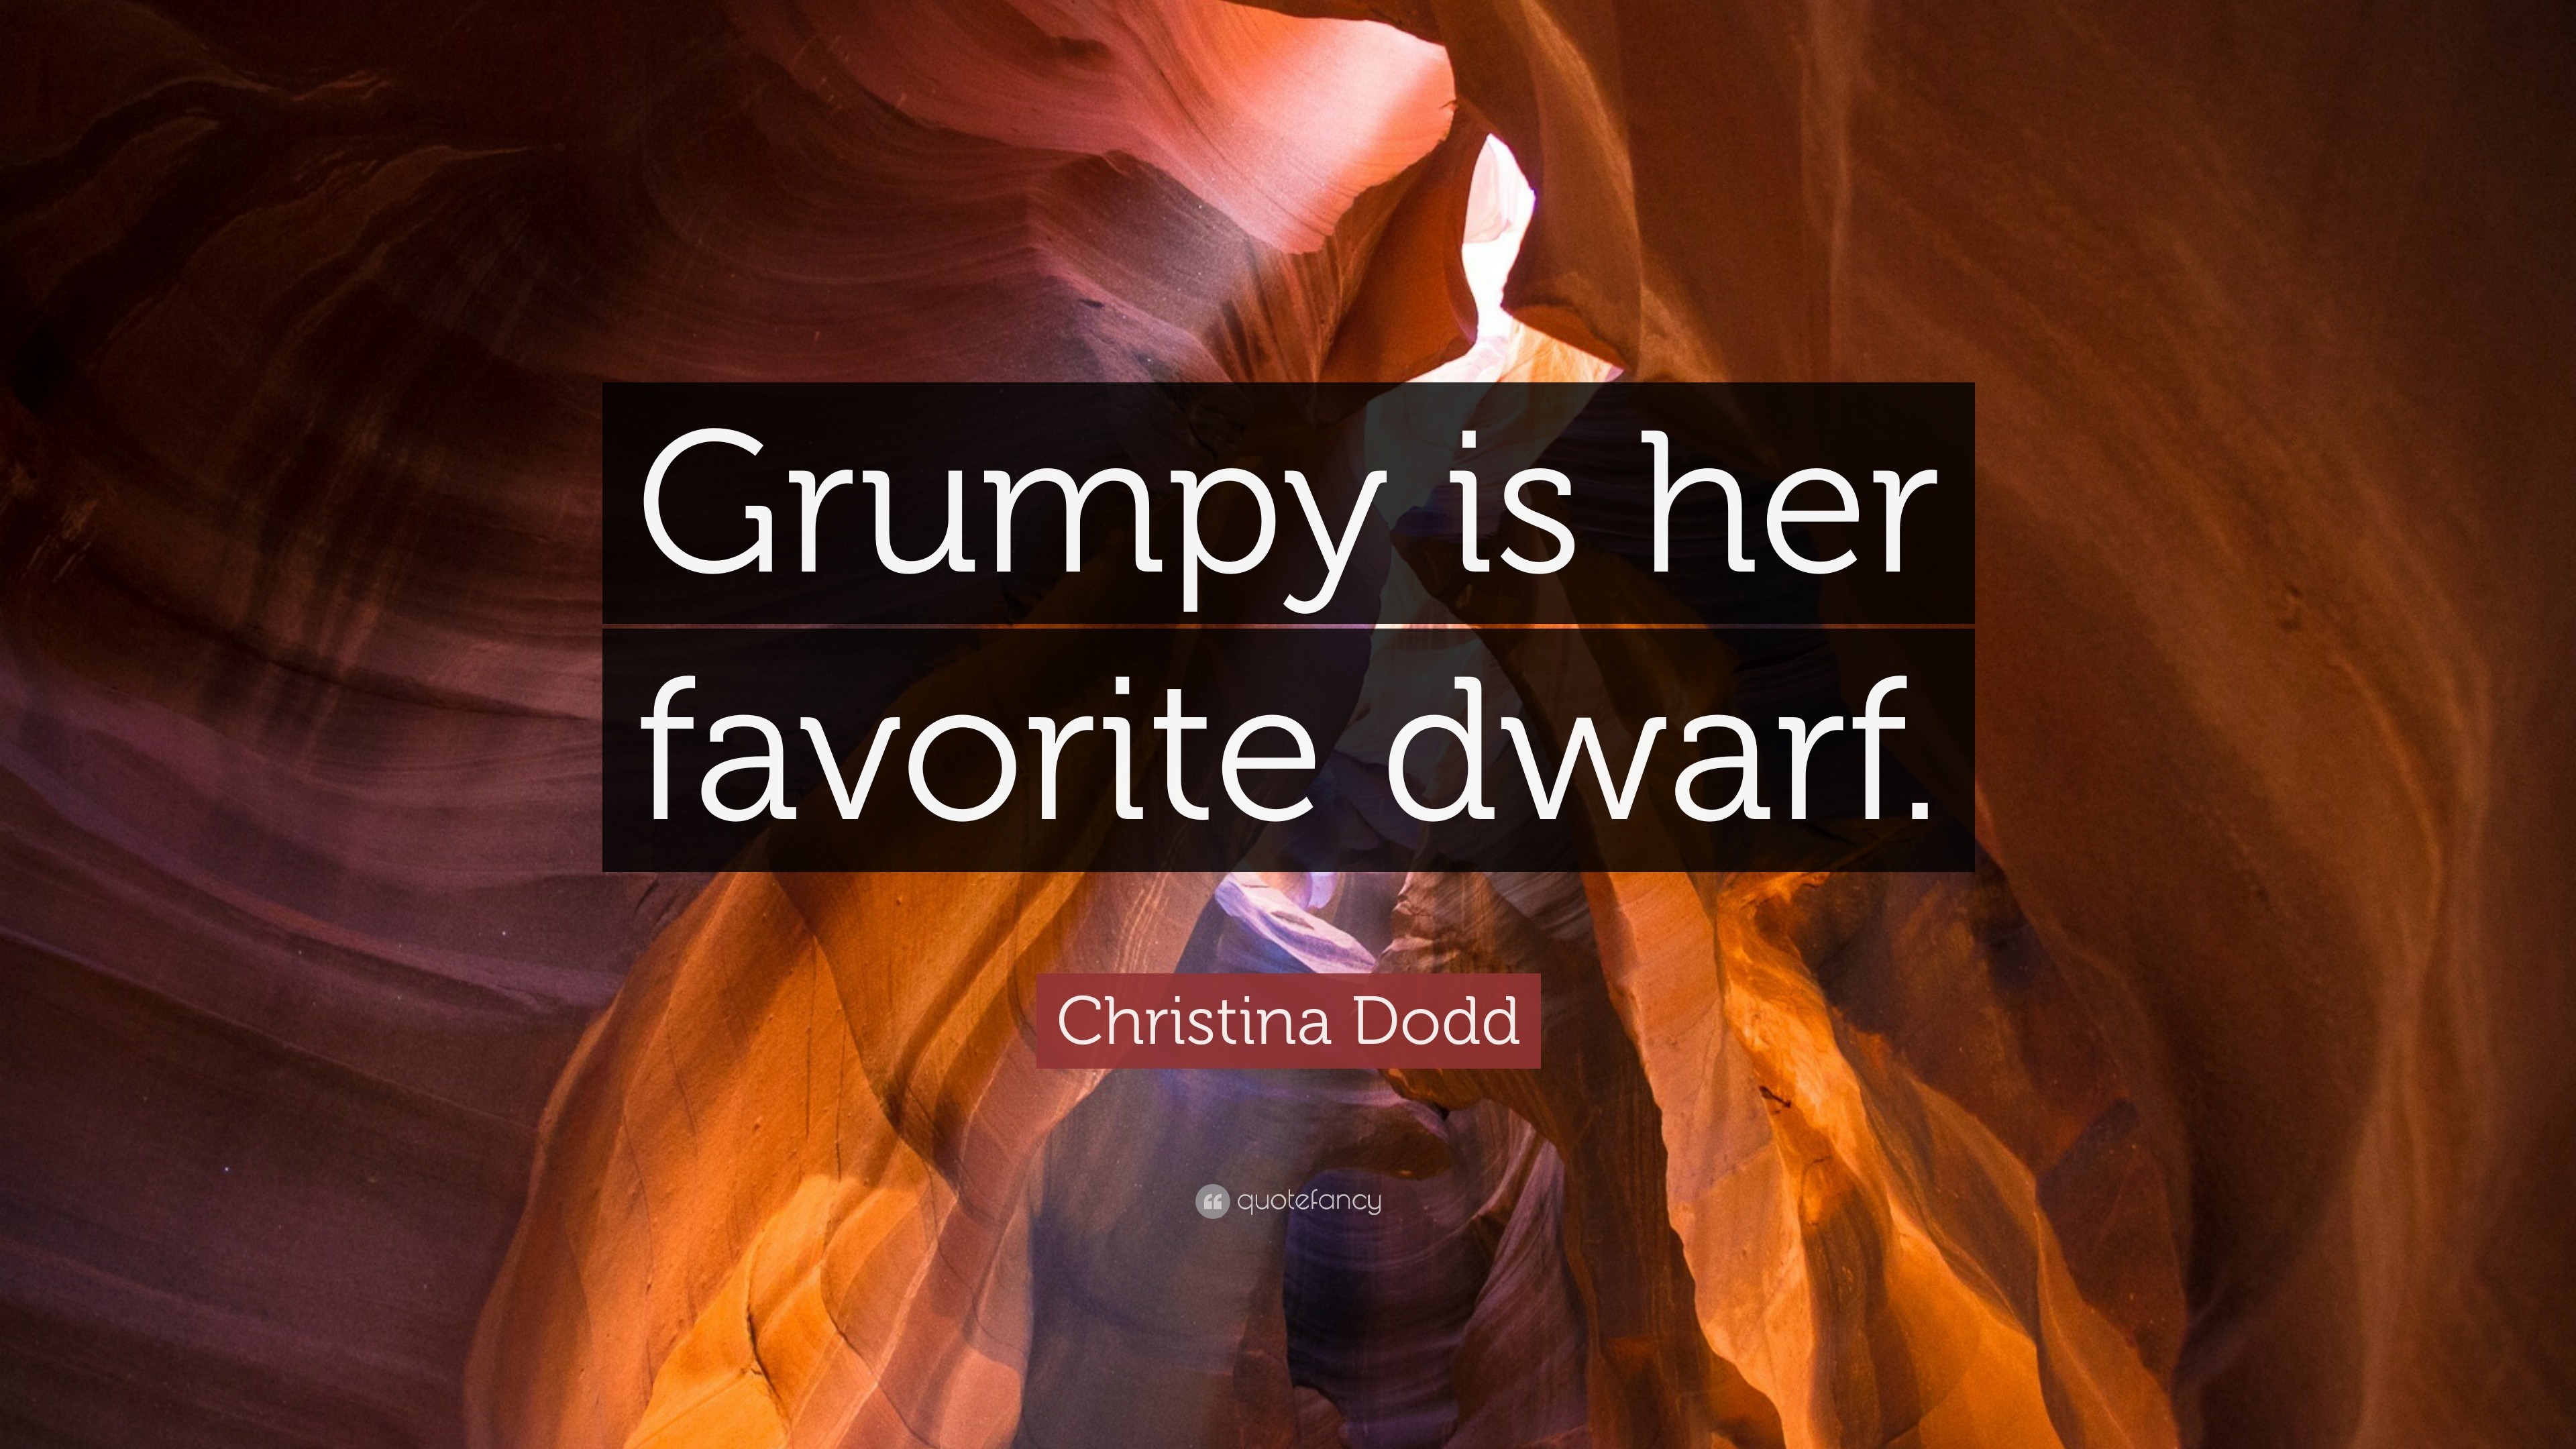 3840x2160 Christina Dodd Quote: “Grumpy is her favorite dwarf.”